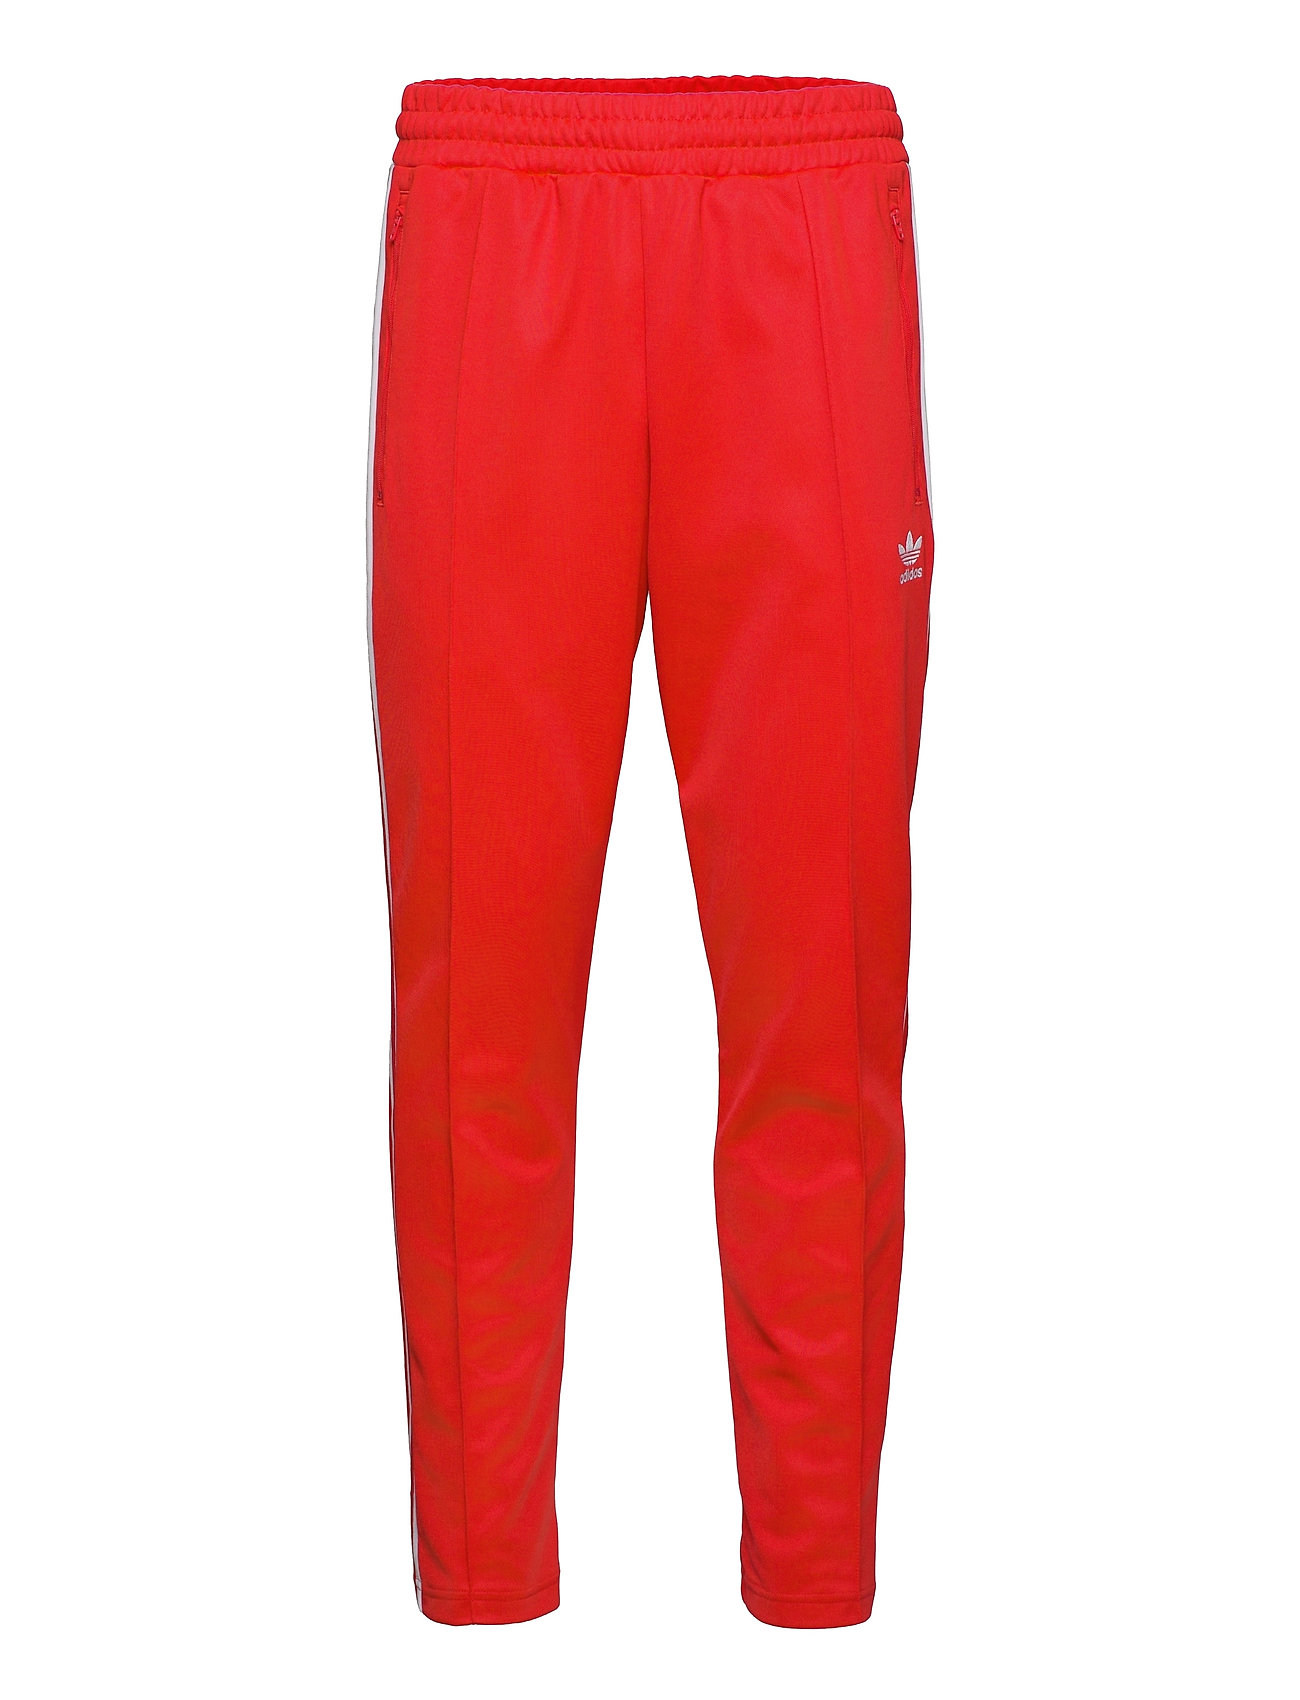 Adicolor Classics Beckenbauer Primeblue Track Pants Collegehousut Olohousut Punainen Adidas Originals, adidas Originals